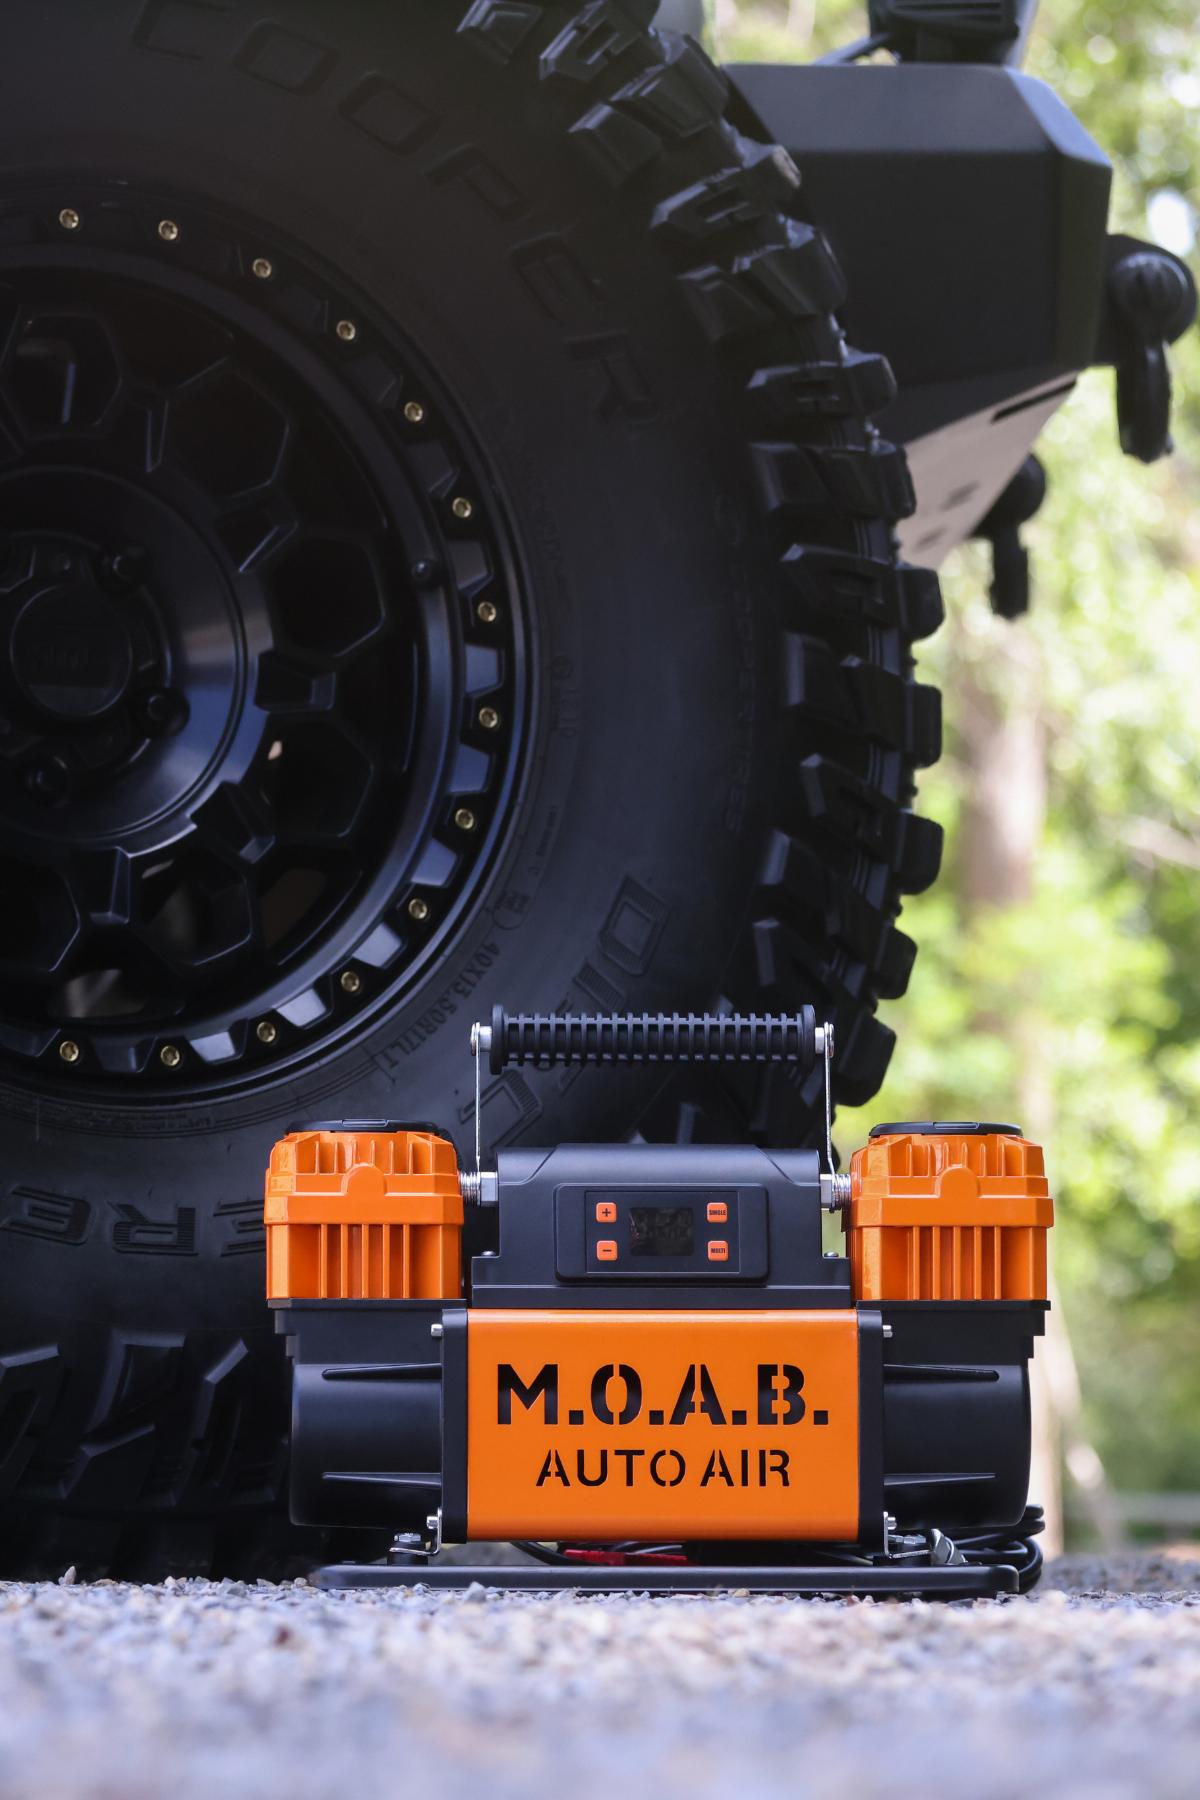 M.O.A.B. Auto Air - 10.6 CFM Portable Dual Air Compressor – EZ FLATE